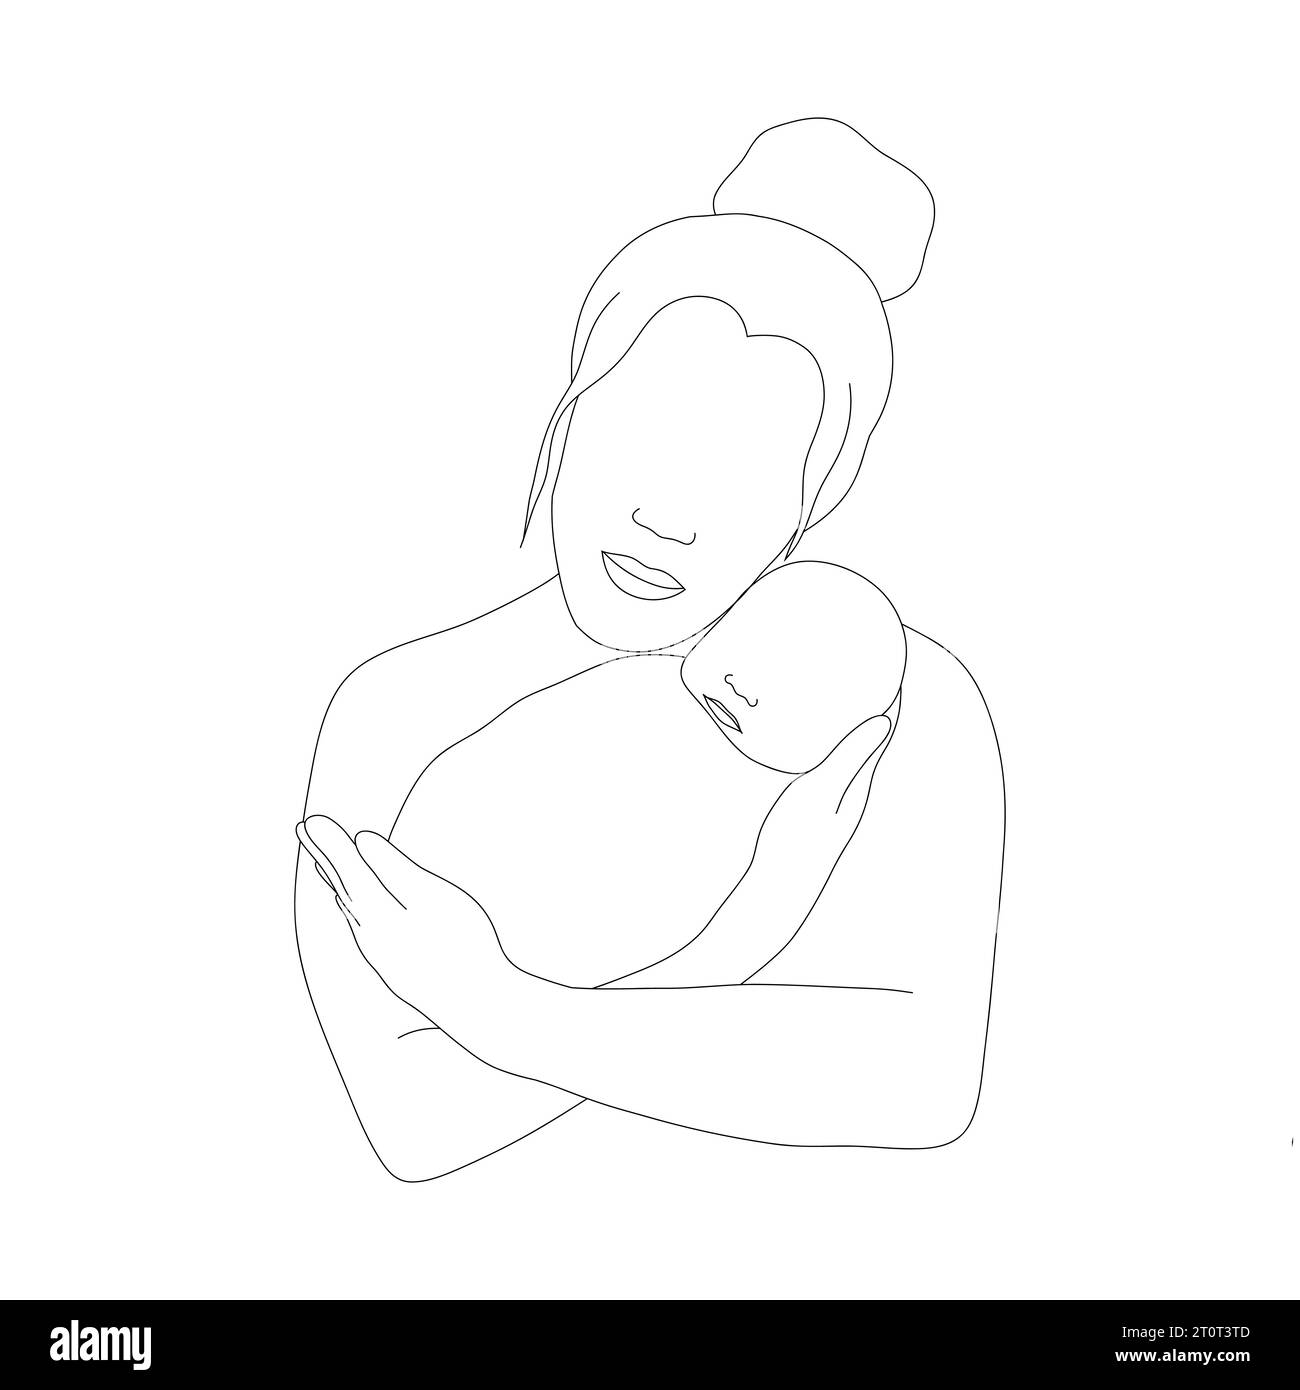 Mutter und Kind im linearen Stil. Glückliche Mutter umarmt ihr neugeborenes Baby. Einzeilige Art. Minimalistische Vektorillustration. Abstrakte Silhouette der Familie Stock Vektor